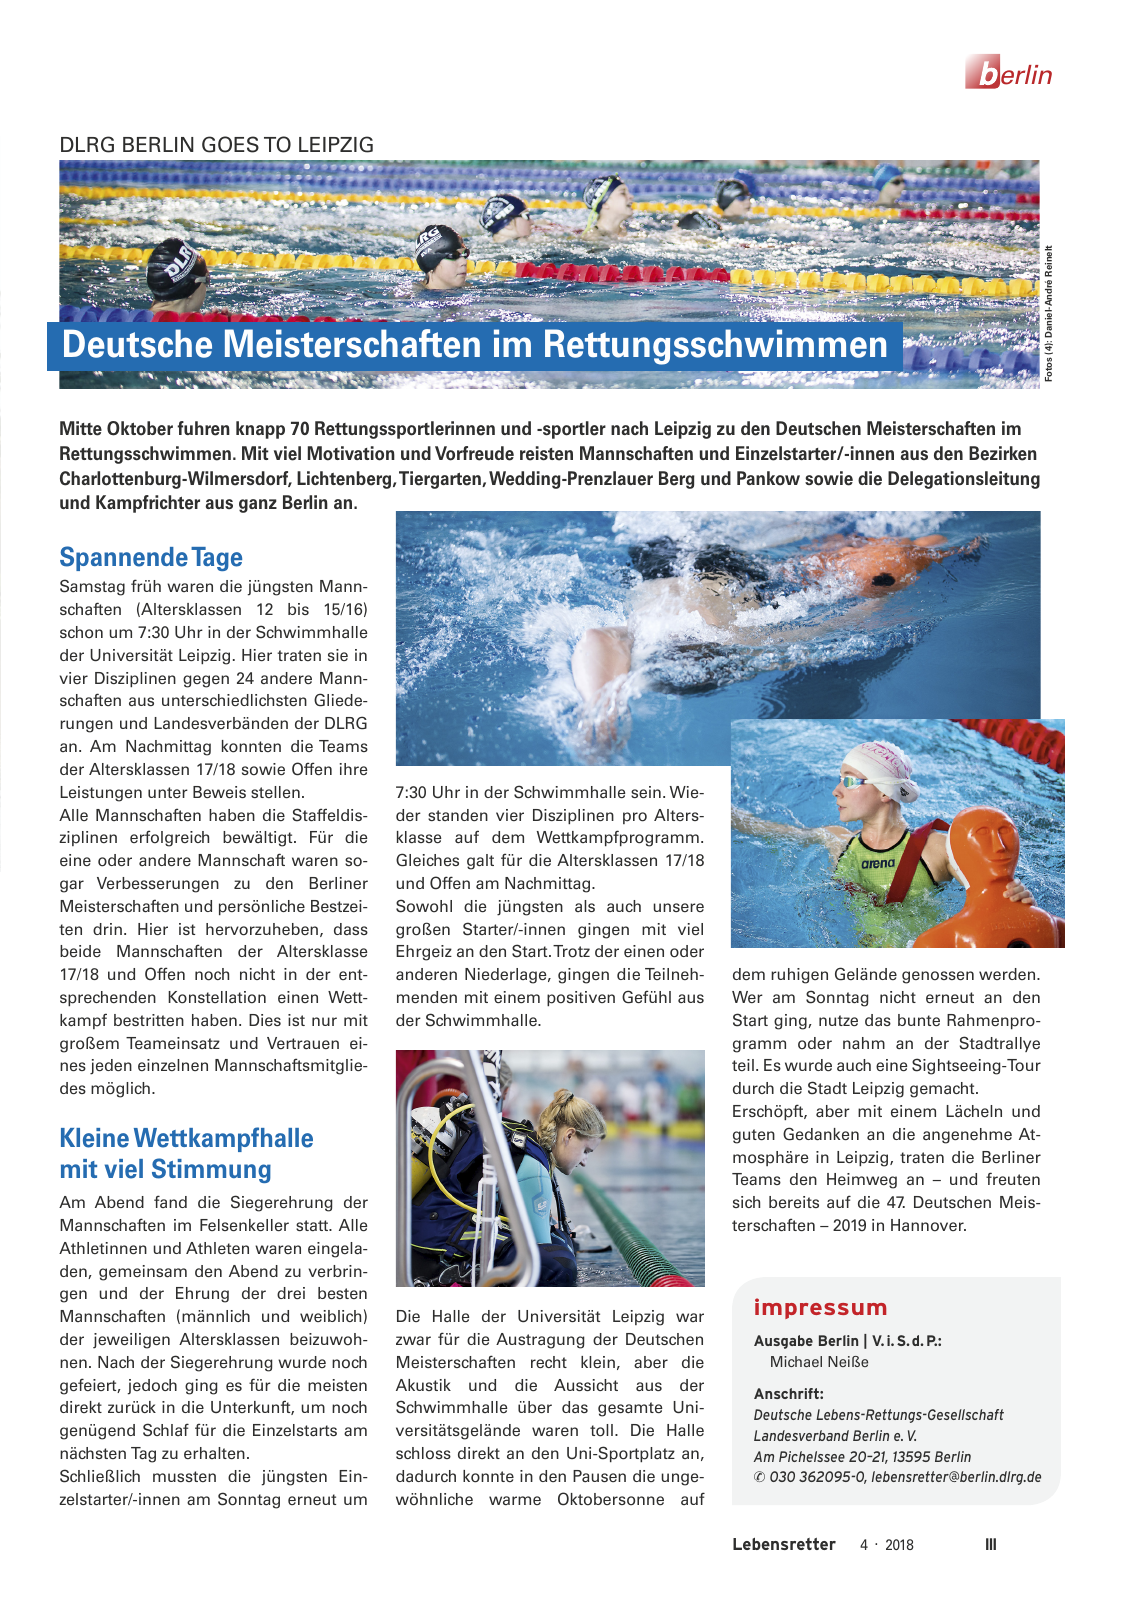 Vorschau Lebensretter 4/2018 - Regionalausgabe Berlin Seite 5